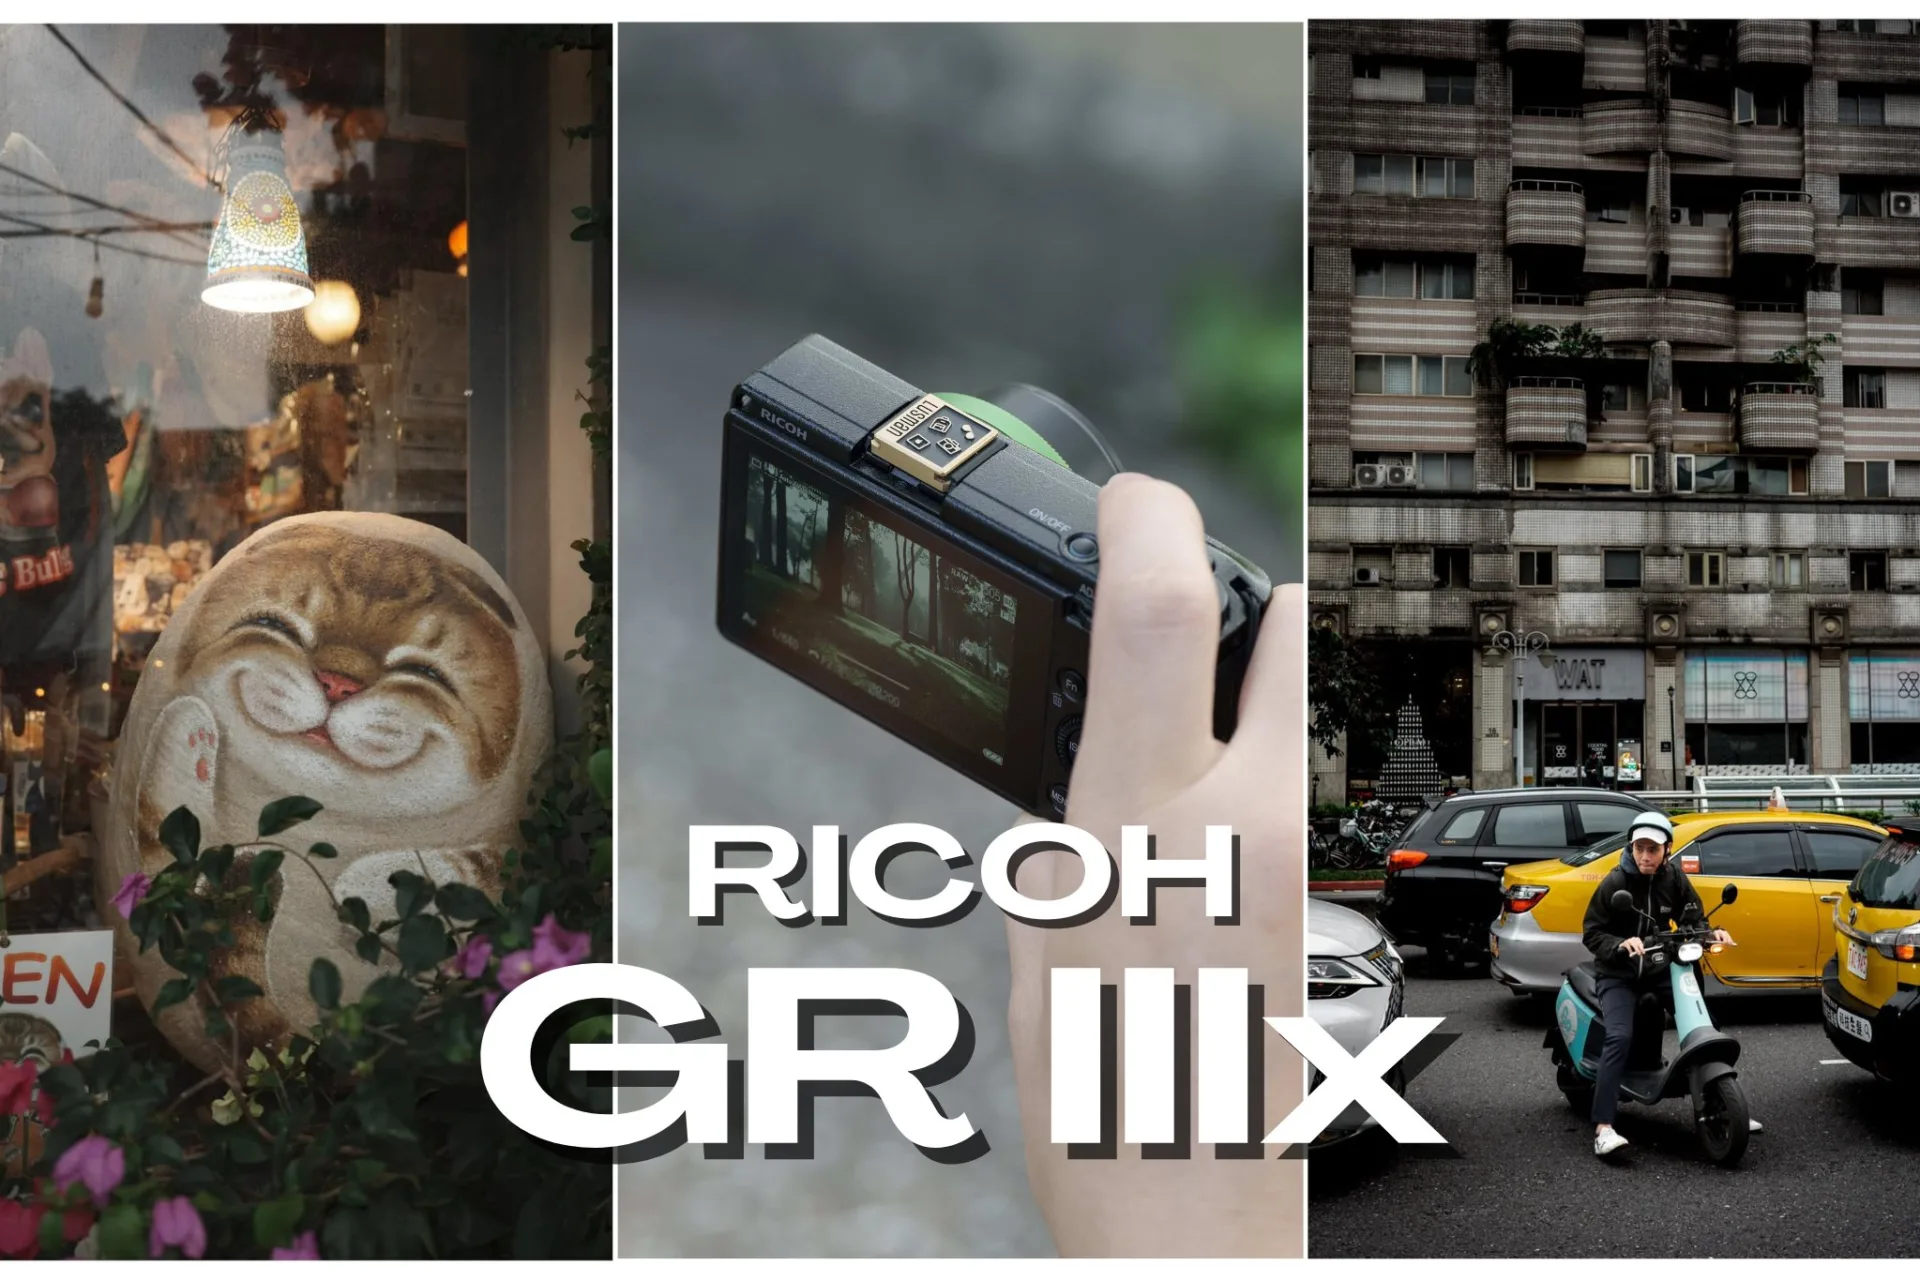 RICOH GR IIIx